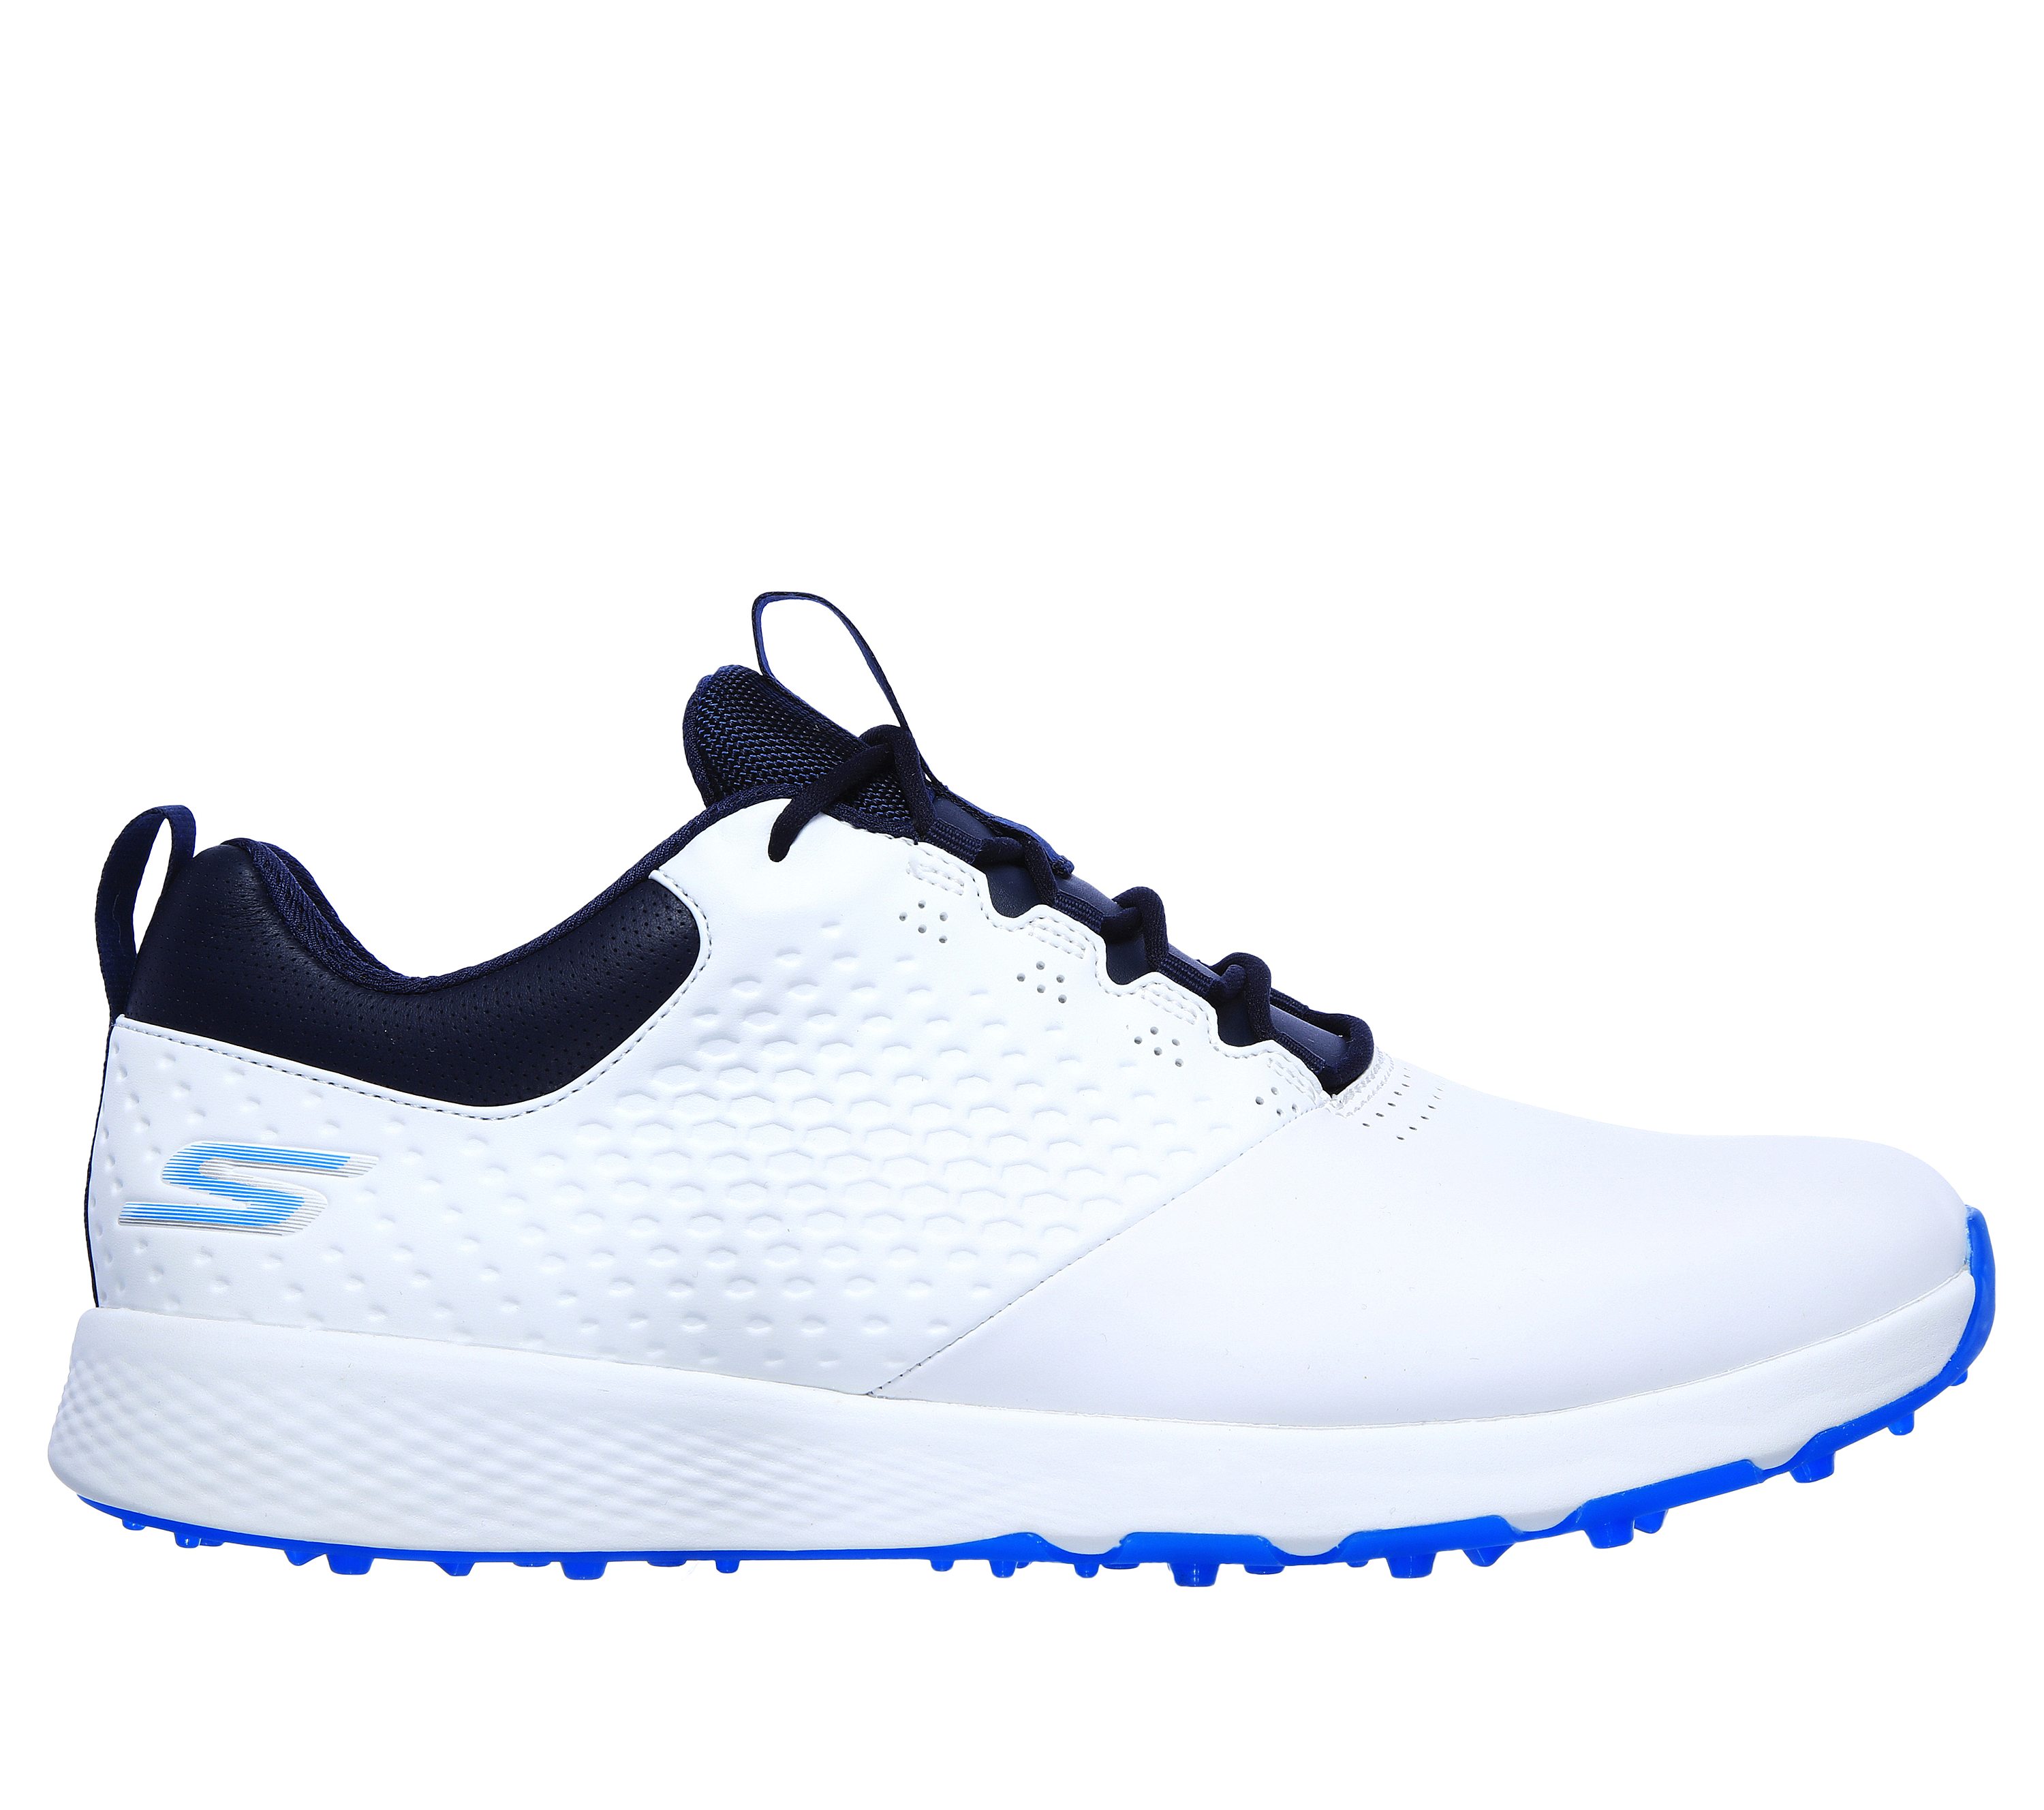 skechers waterproof tennis shoes